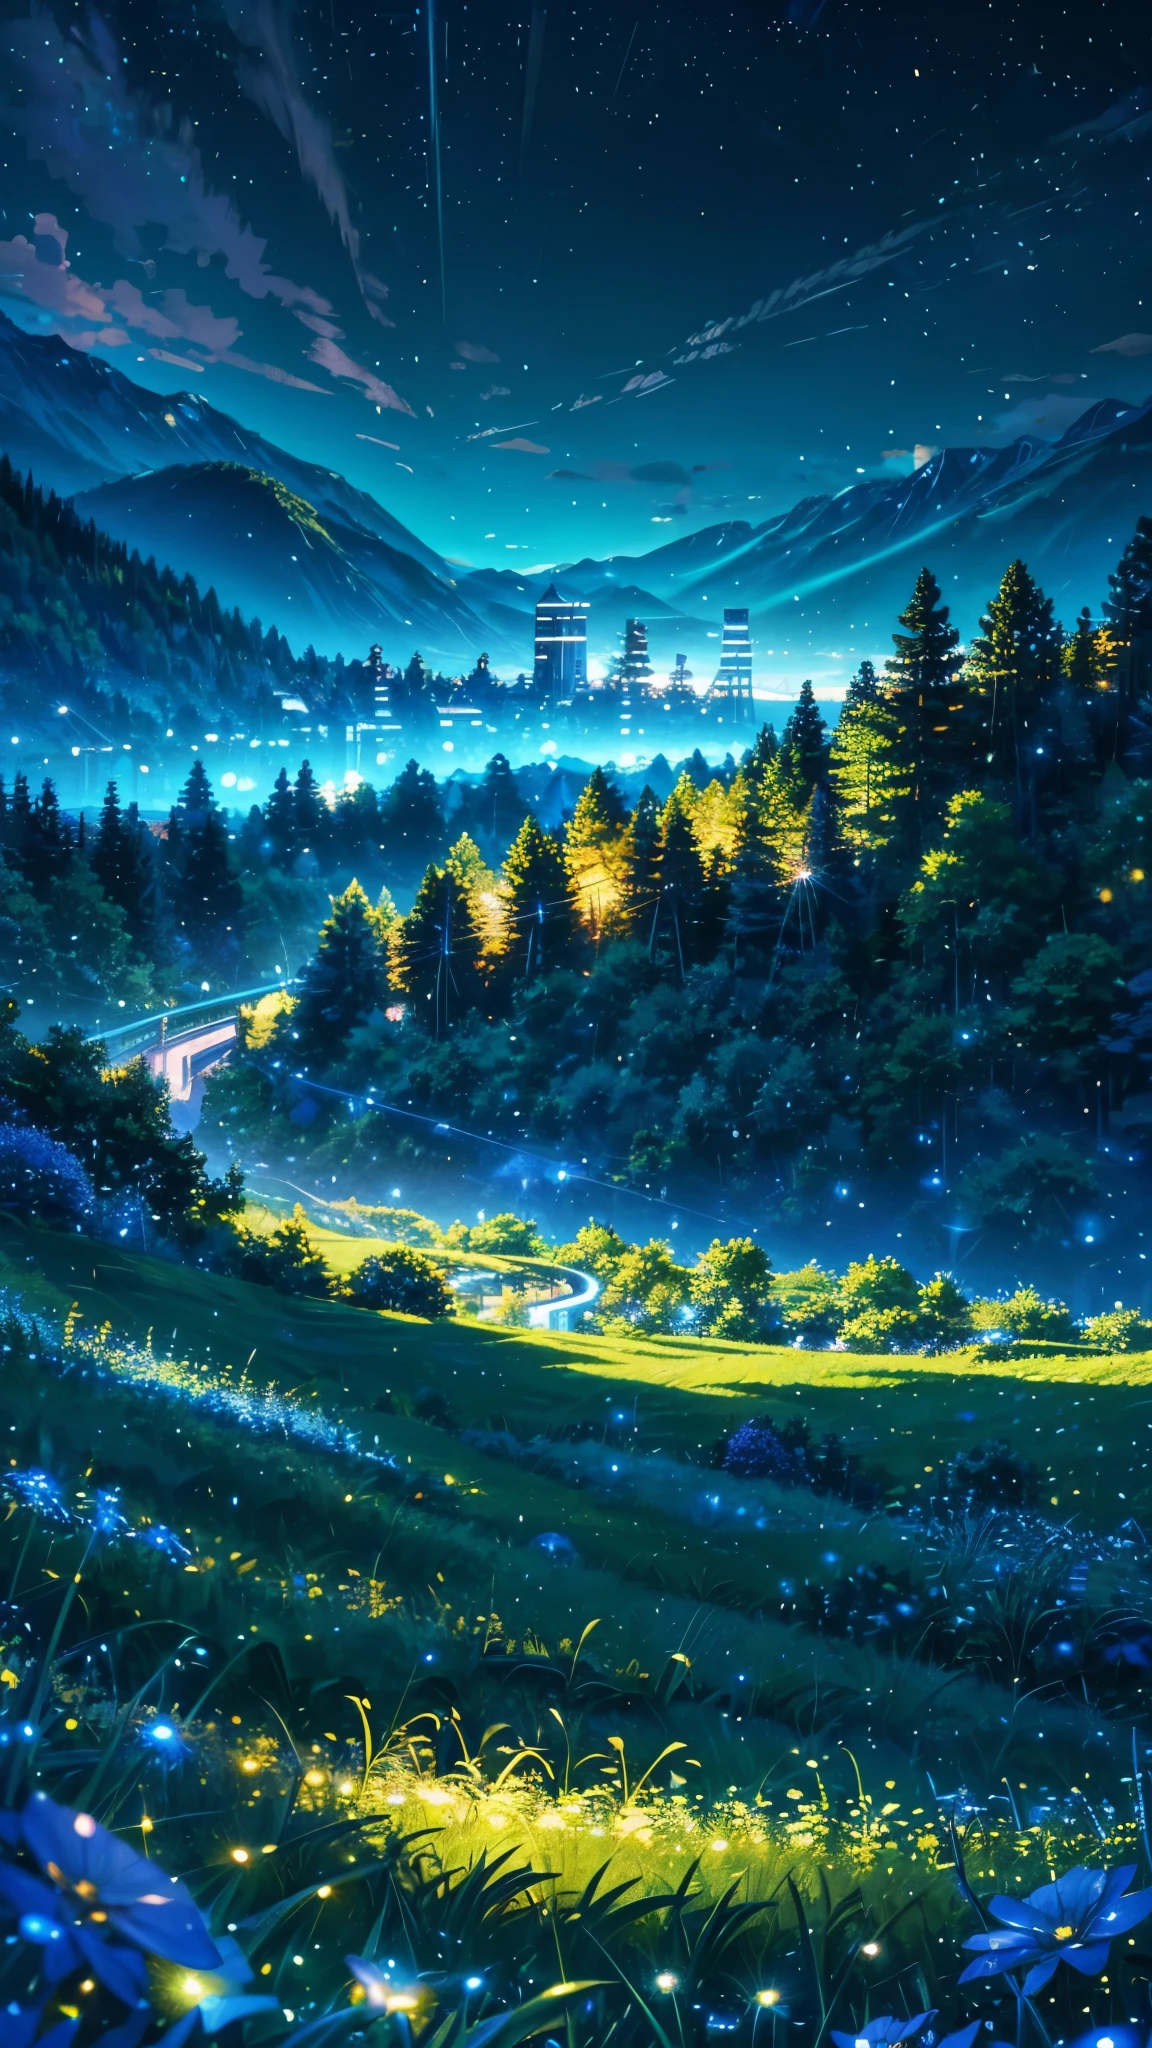 애니메이션에서 영감을 받은 녹지 풍경 알프스와 하늘처럼 밝은 파란색 유리가 반짝이는 반짝이는 효과(보케 효과) (반딧불이)